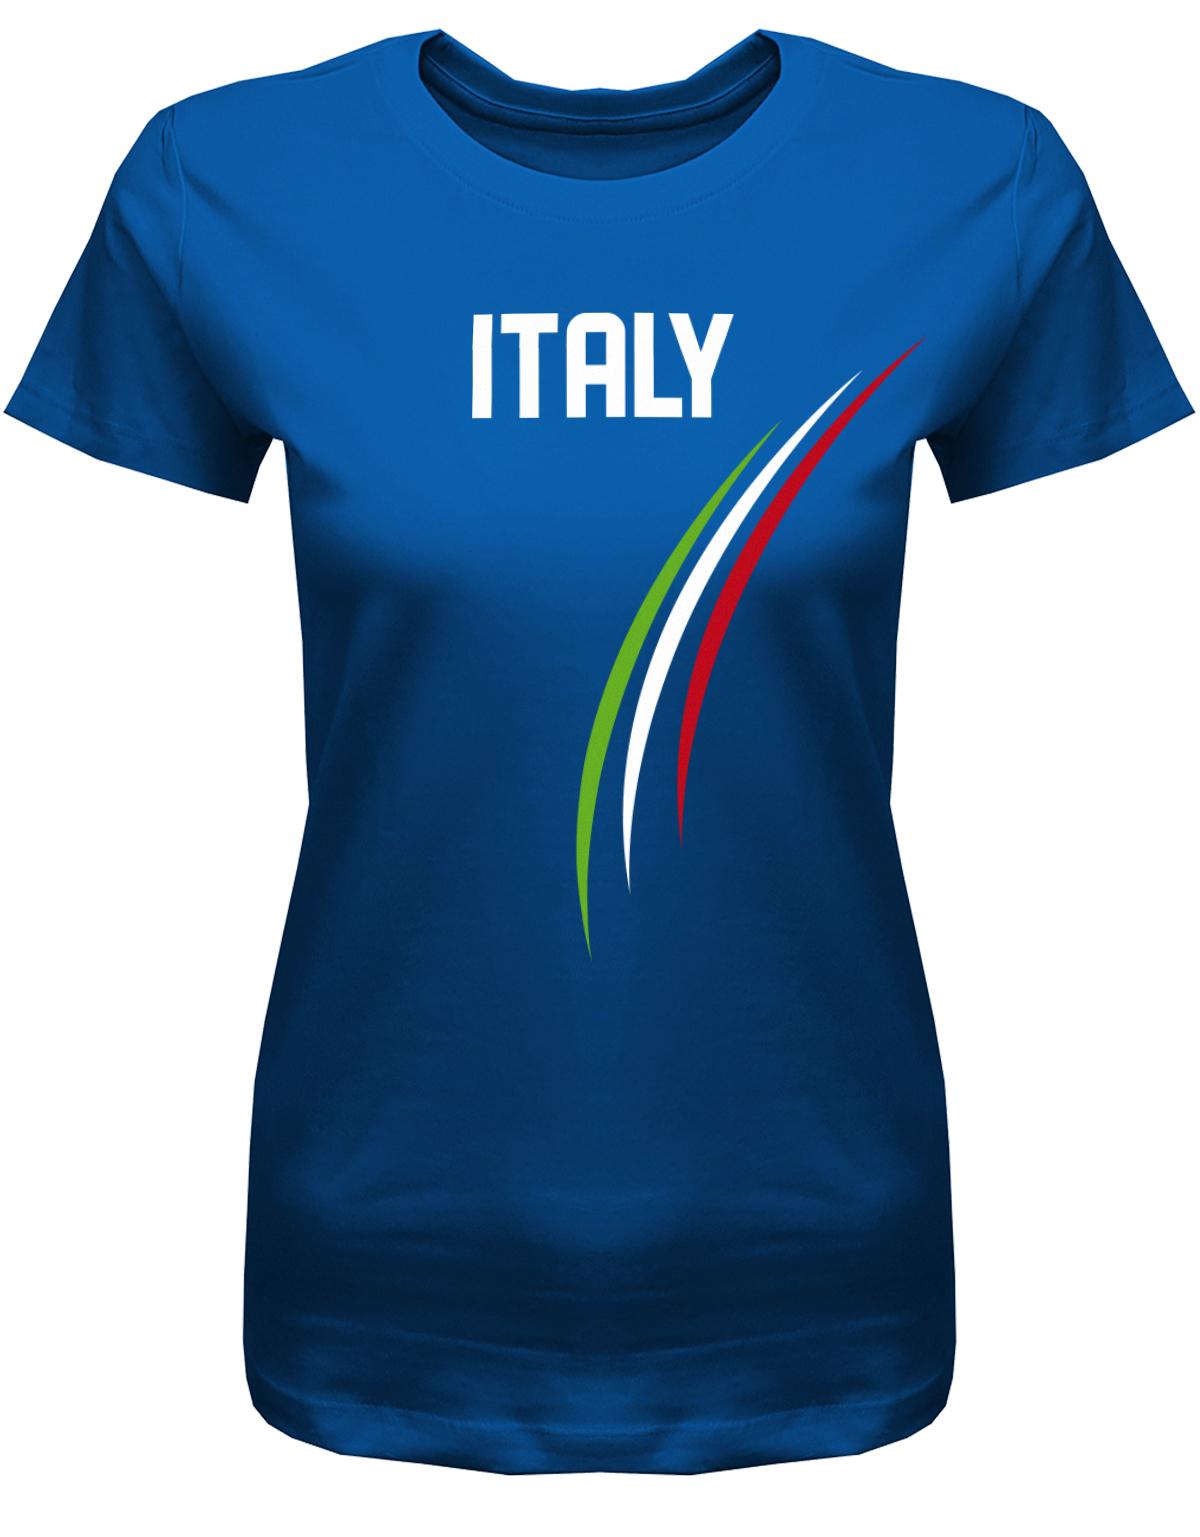 Italy-Damen-Shirt-Royalblau